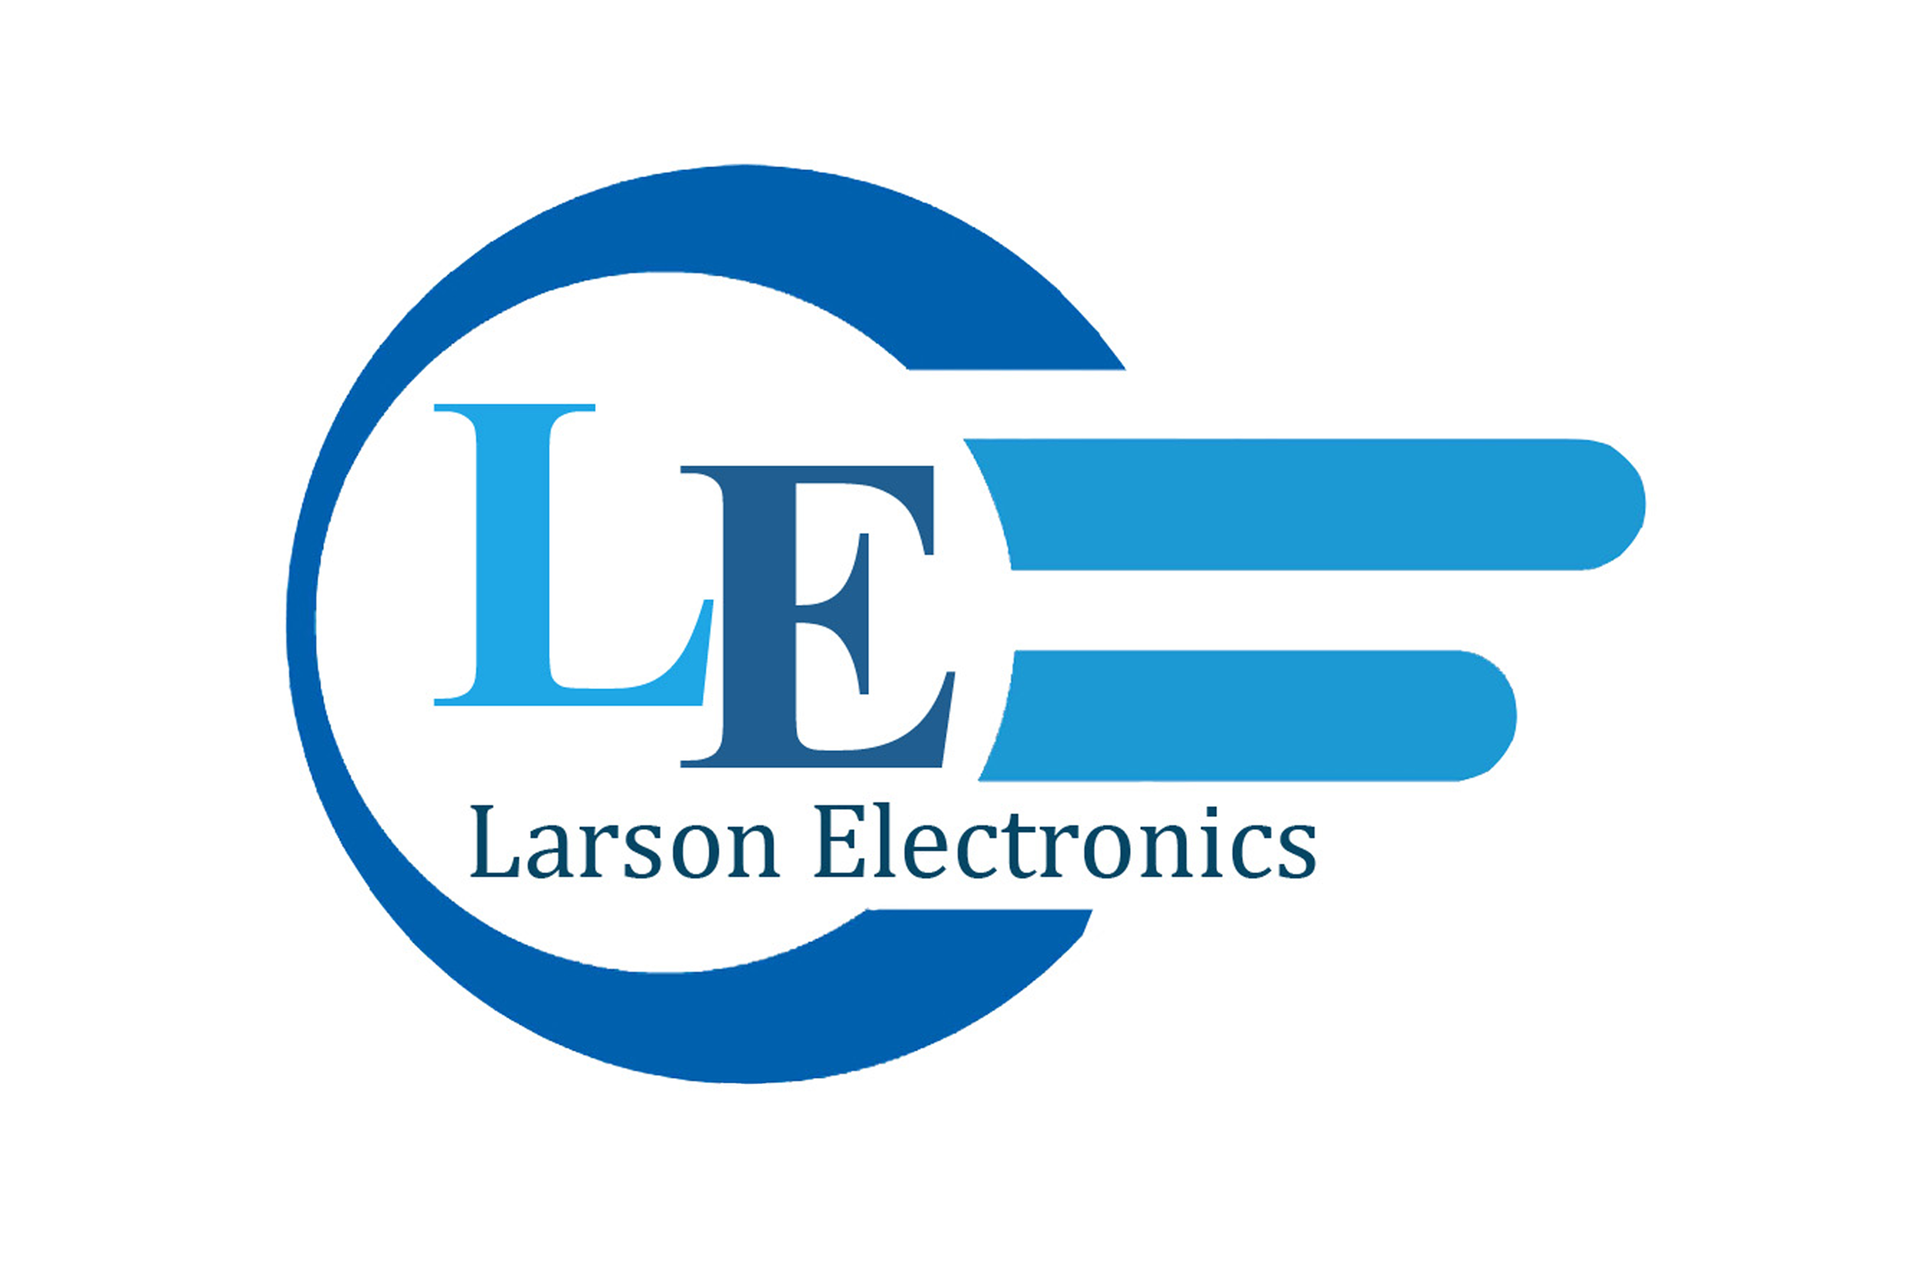 Div 50Hz Class I 15W I Larson Electronics 0821PK9ATGA Explosion Proof Aluminum LED Drop Light UK BS1363 2 LED 220V 